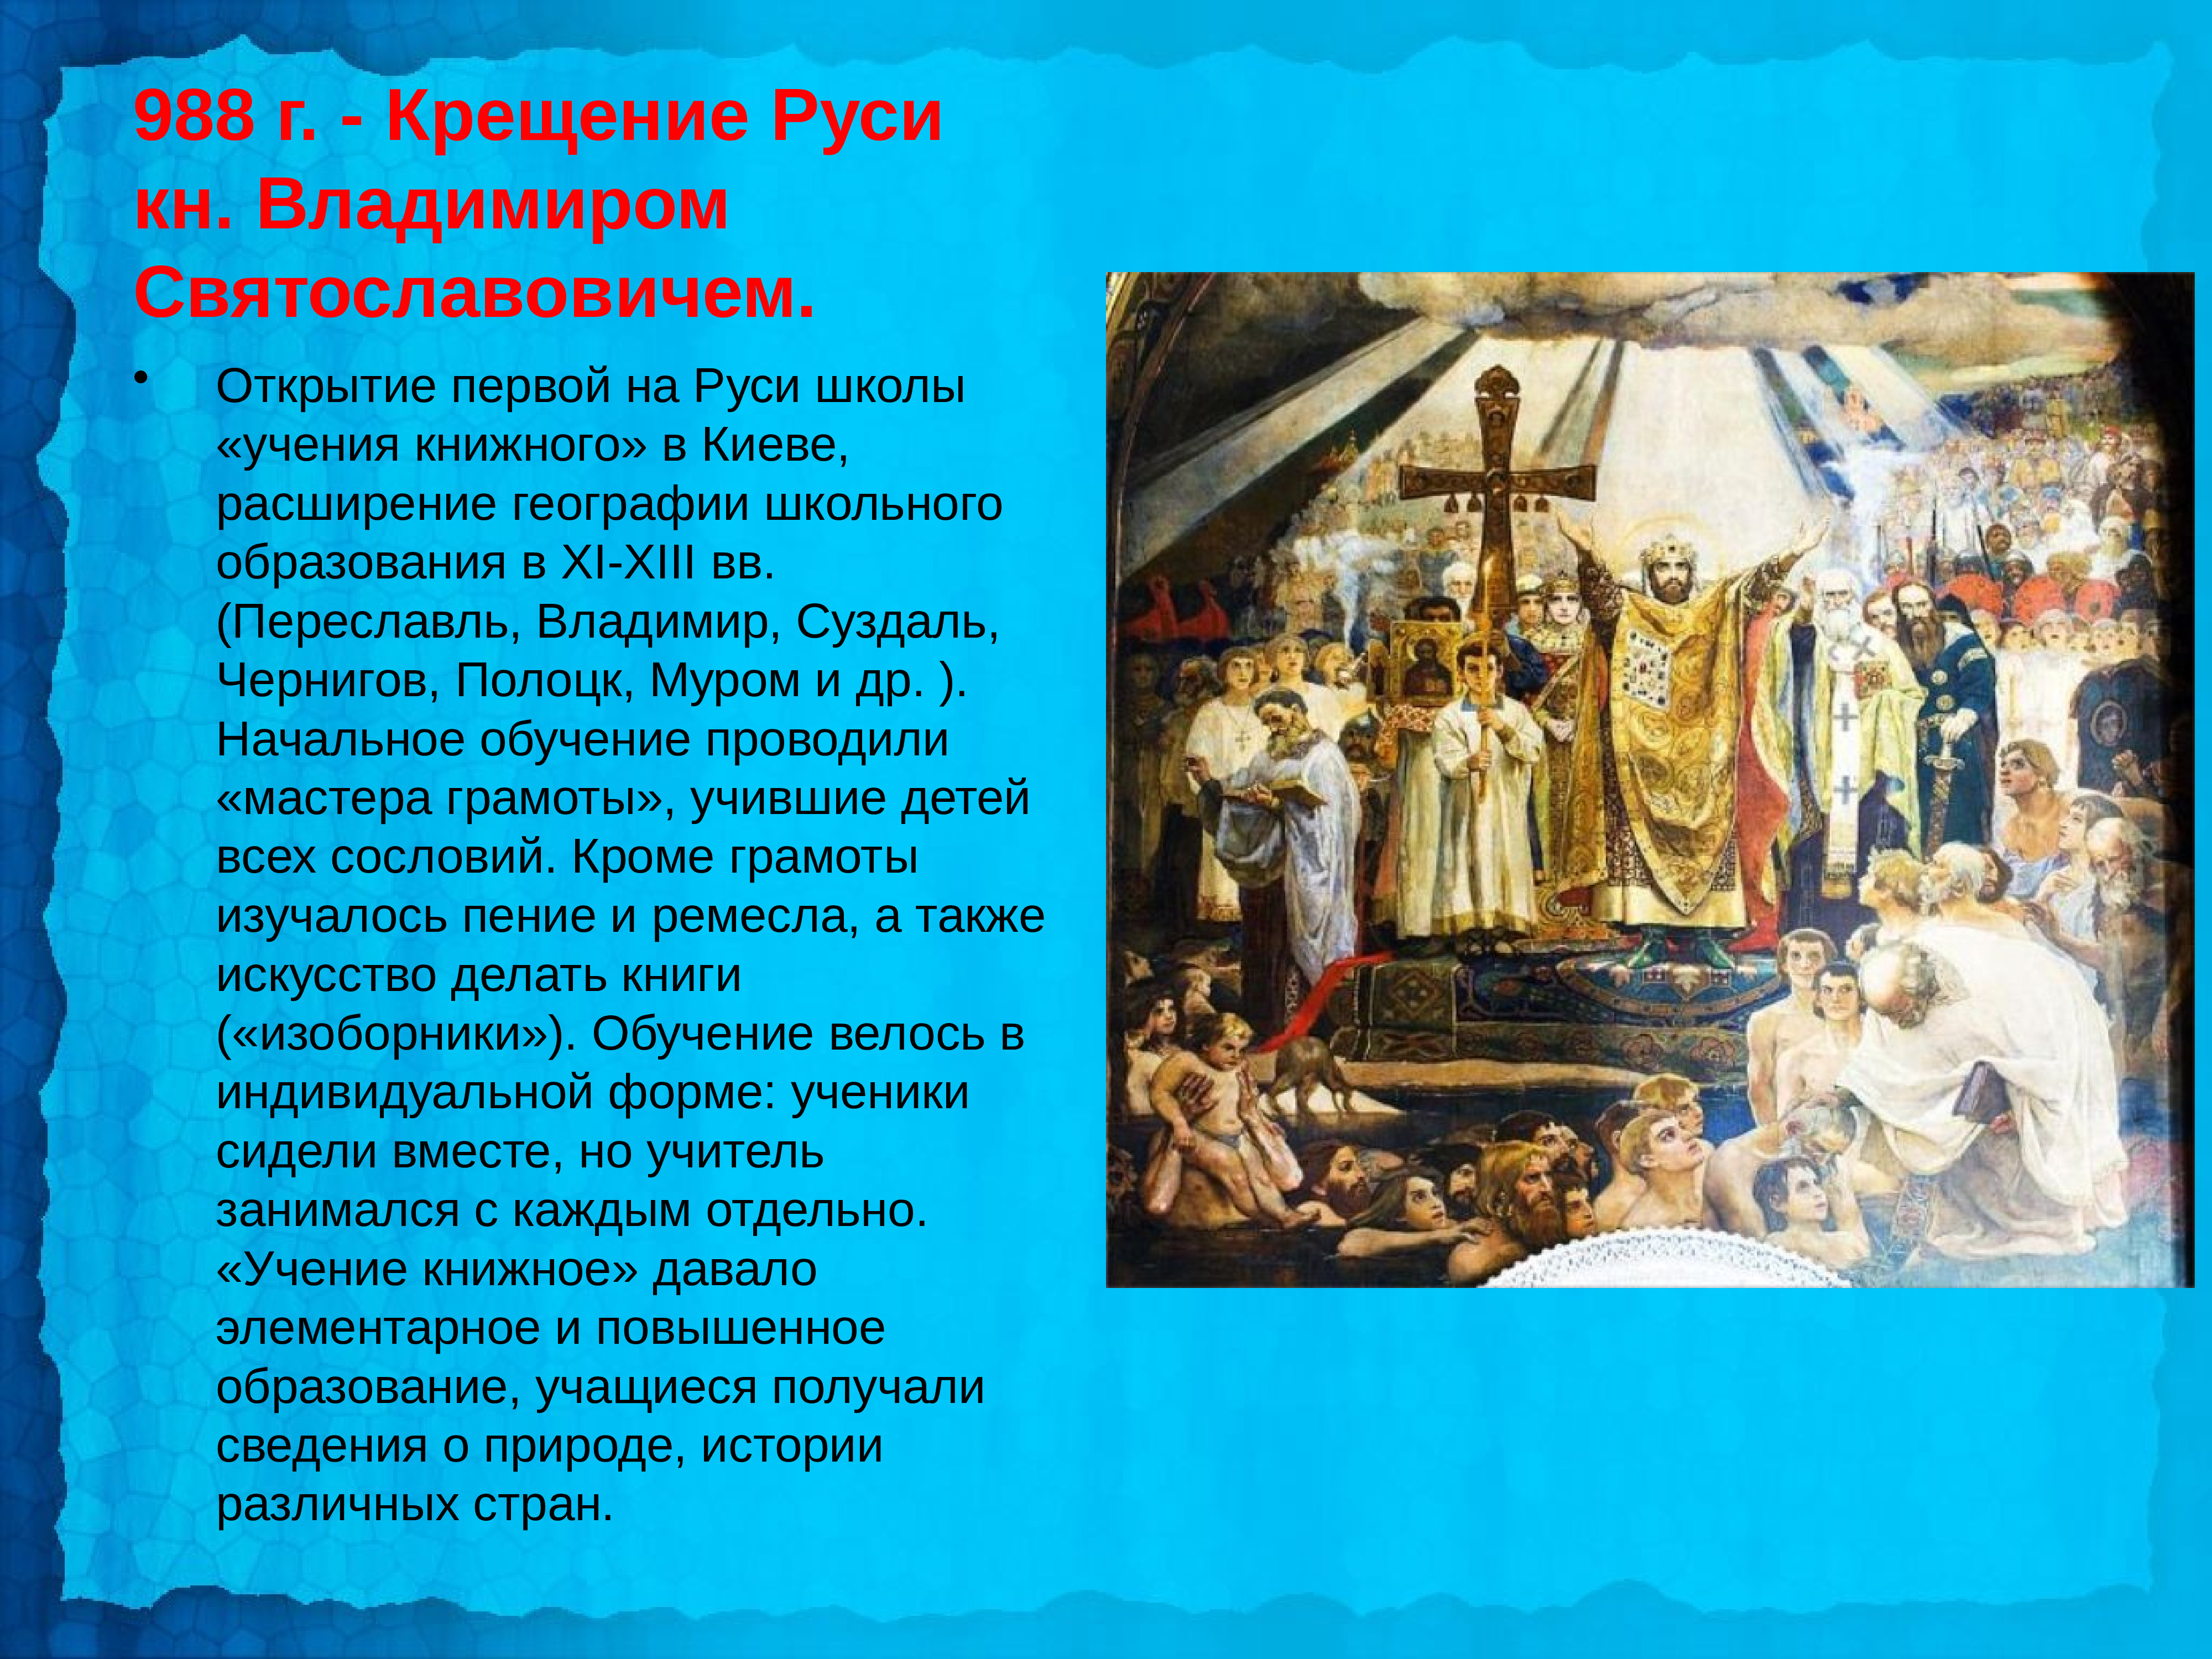 Первыми русскими православными были. 988 Г. – крещение князем Владимиром Руси. 988 Крещение Руси Владимиром красное солнышко.